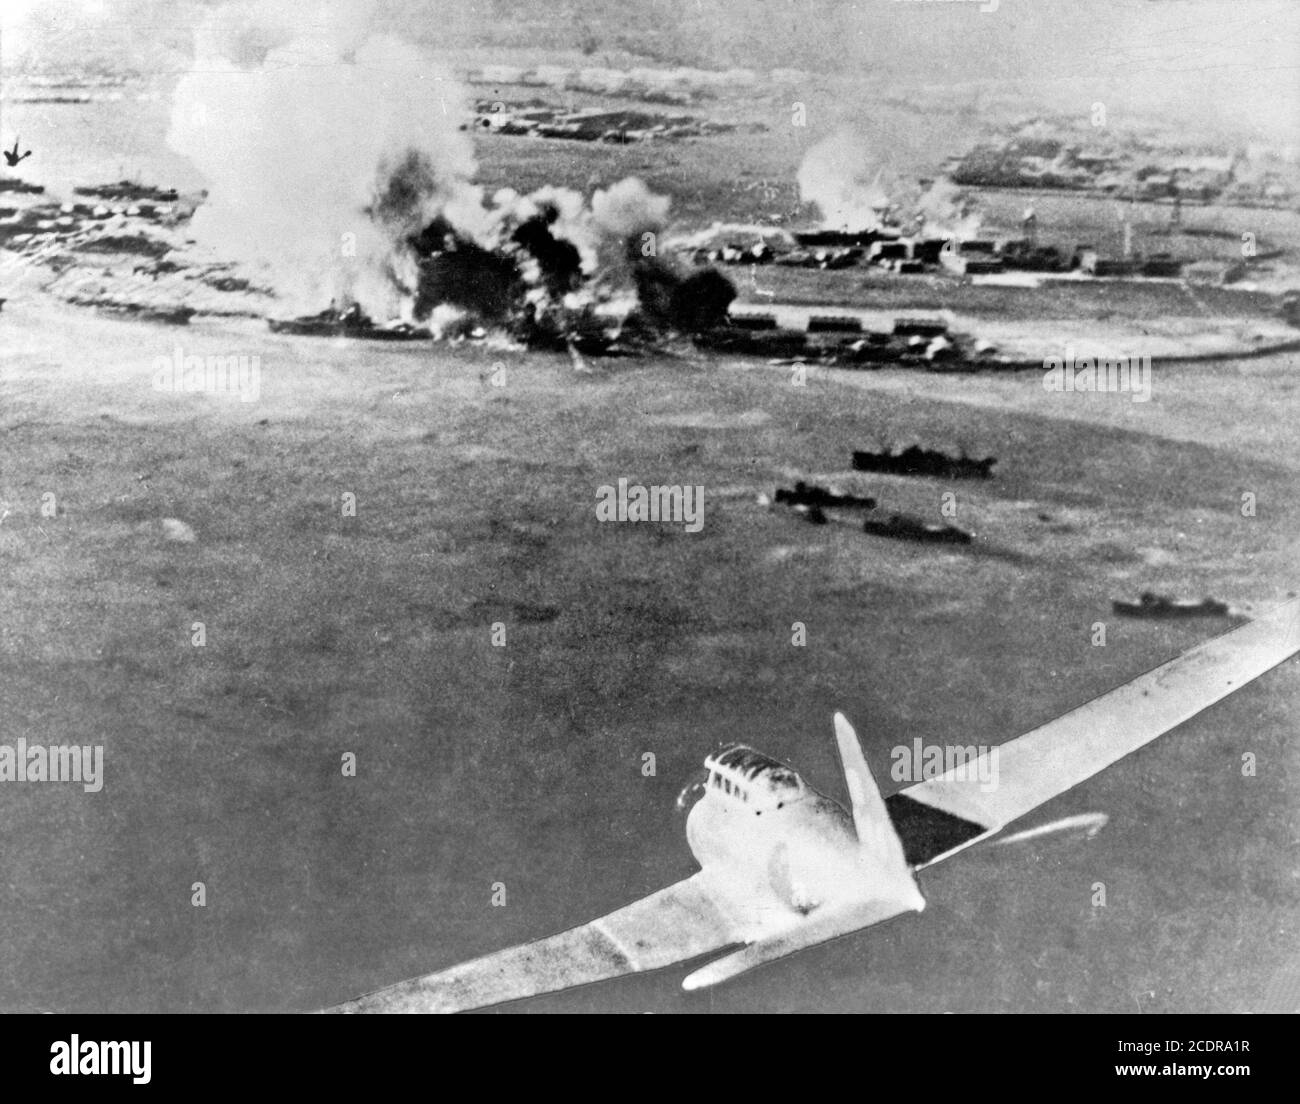 Pearl Harbor 1941. Foto eines japanischen Torpedobombers während des Angriffs auf Pearl Harbor am 7. Dezember 1941. Stockfoto